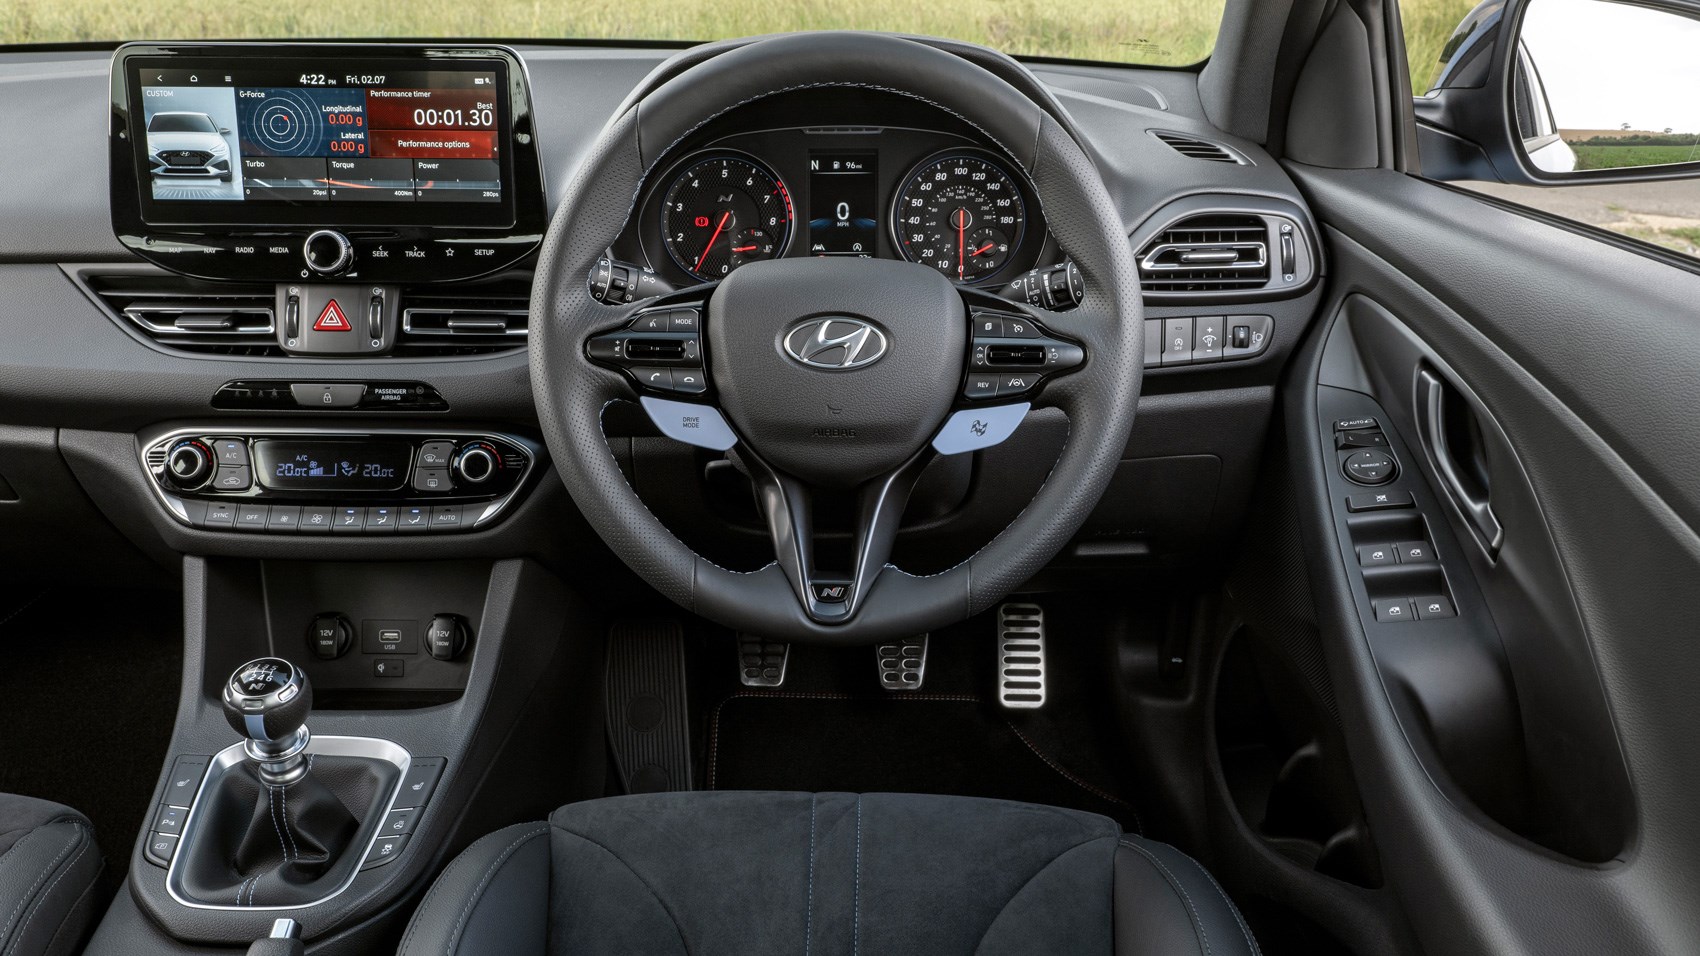 Hyundai i30 N (2022) Review